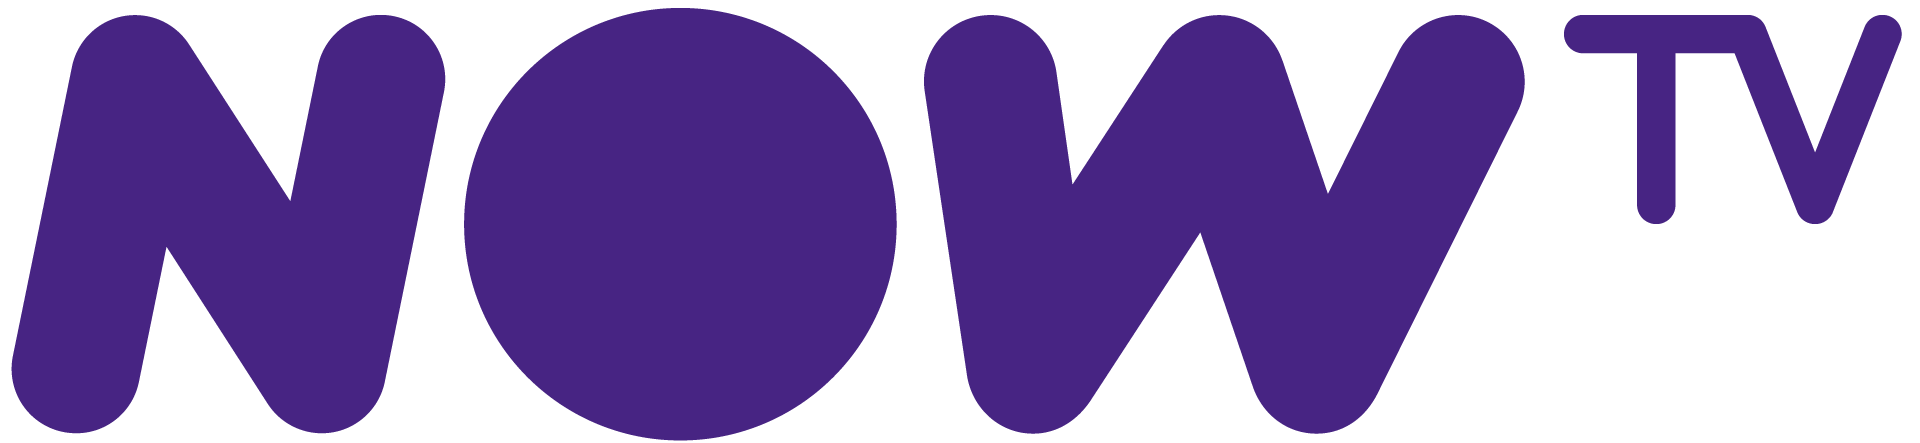 Logotipo da Now Tv